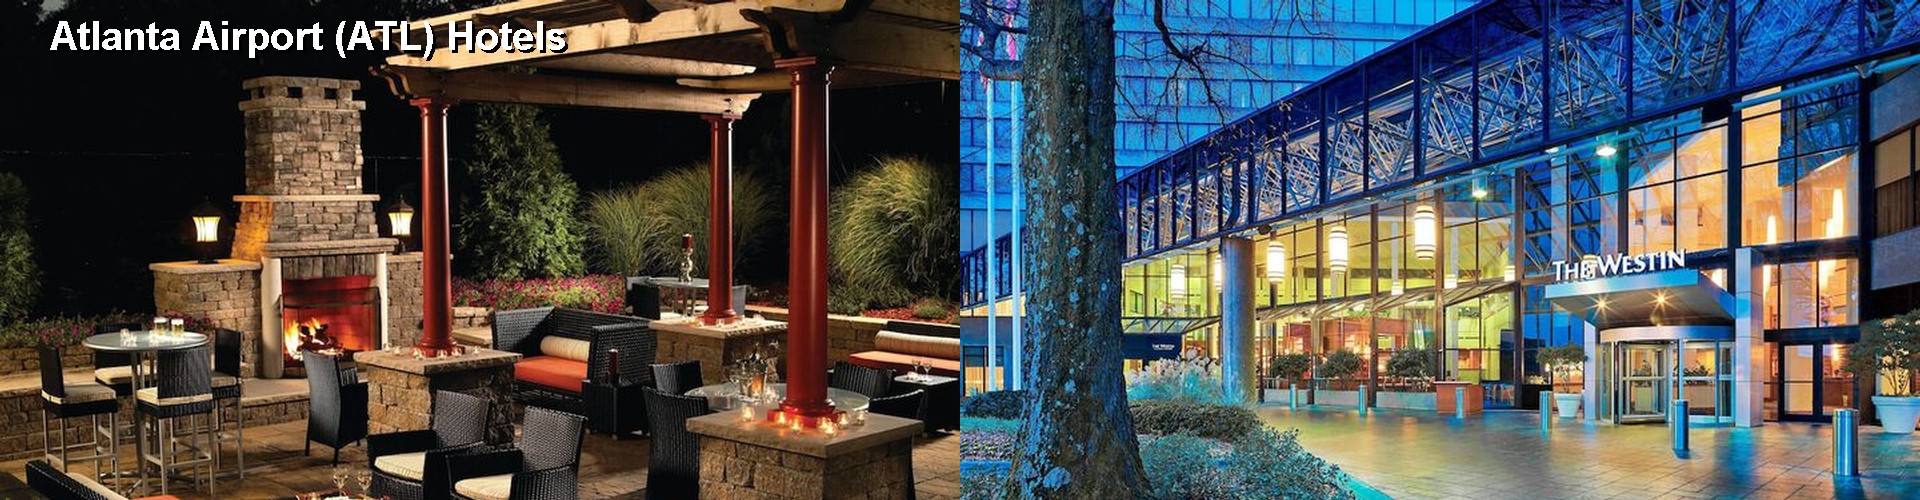 3 Best Hotels near Atlanta Airport (ATL)